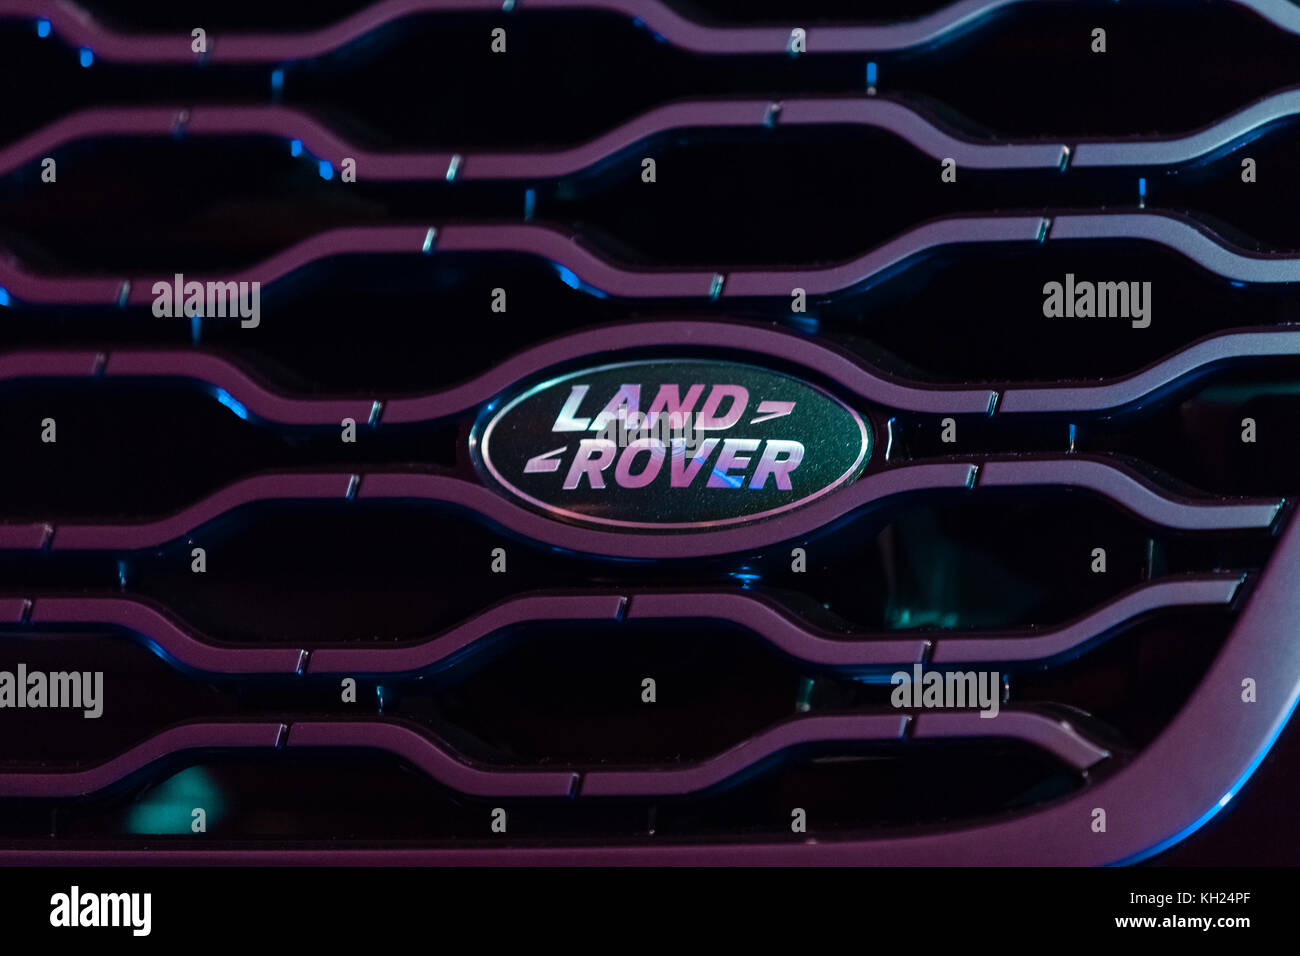 Land rover logo on a Range Rover Velar Stock Photo